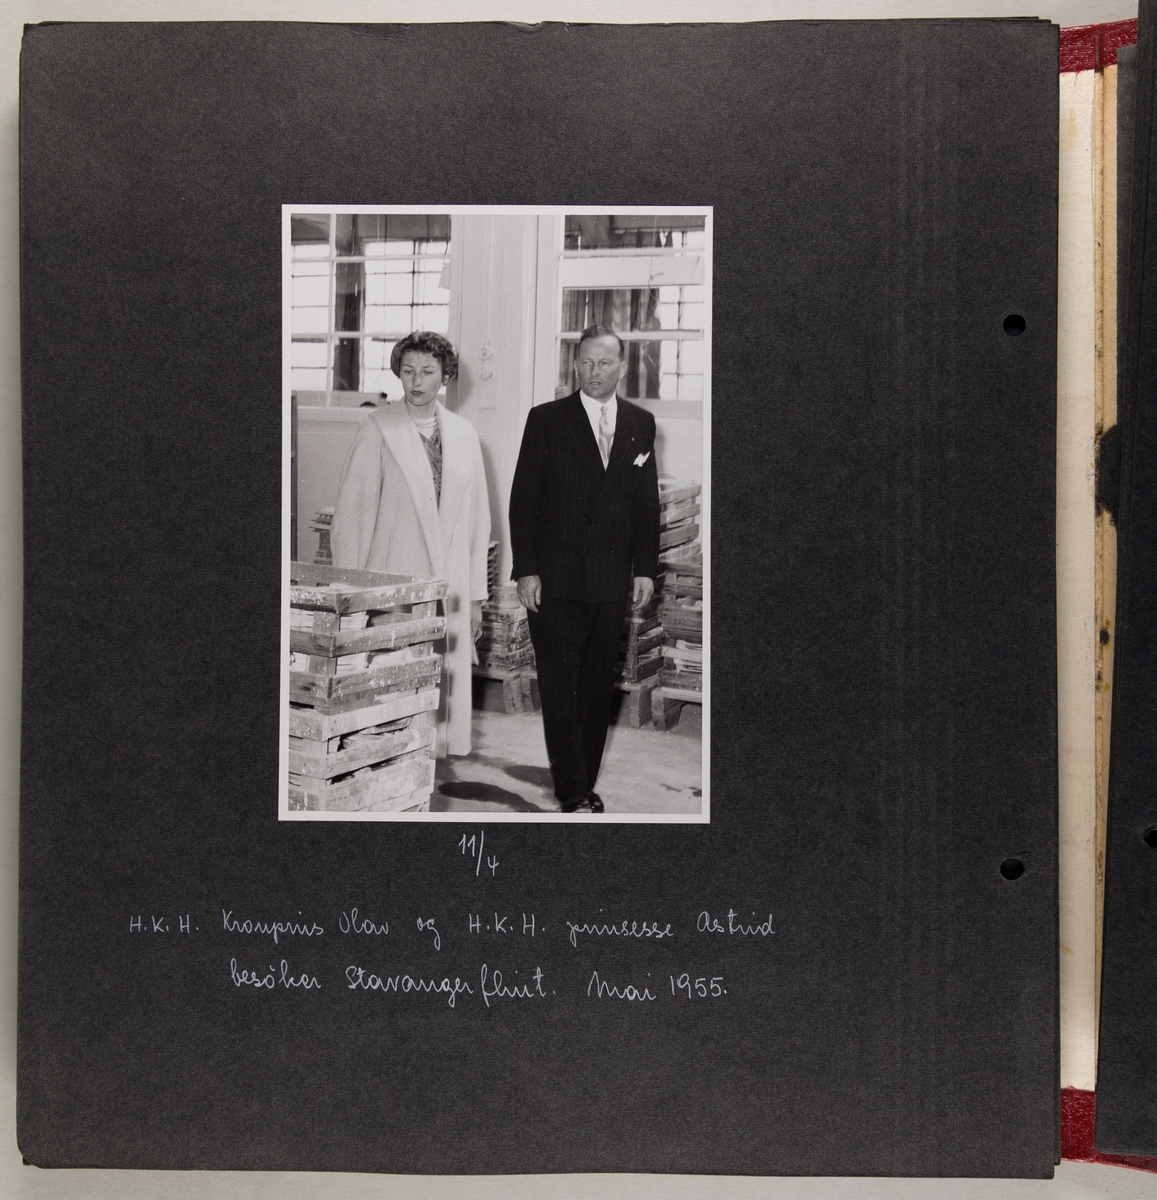 Fotoalbum fra Stavangerflint A/S. Det er bilder fra ledergruppa ved bedriften og fra flere besøk, blant annet kongelige besøk i 1951 og 1955.